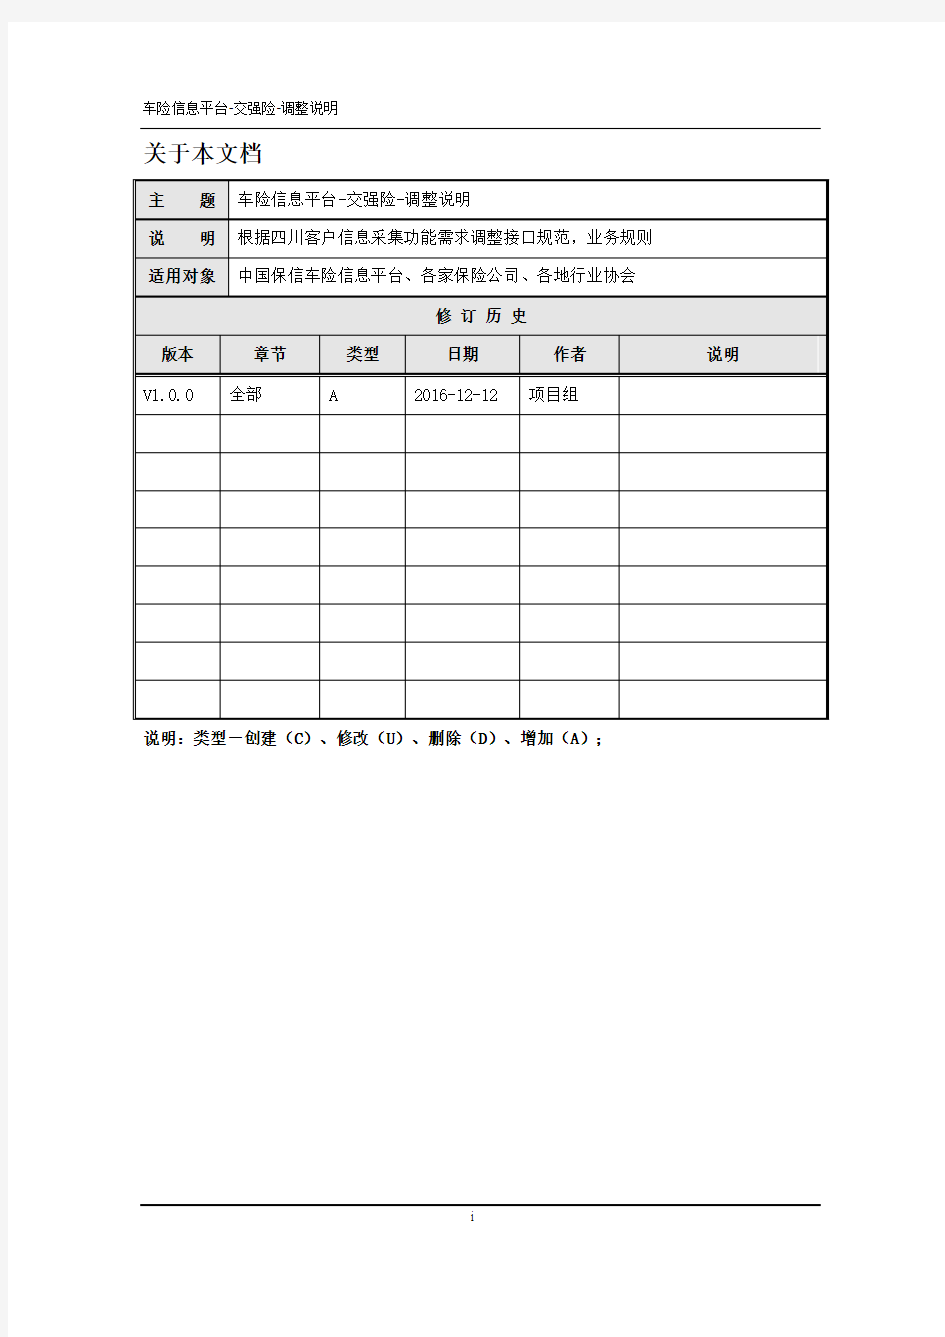 中国保信车险信息平台交强险-V6.0.2-调整说明